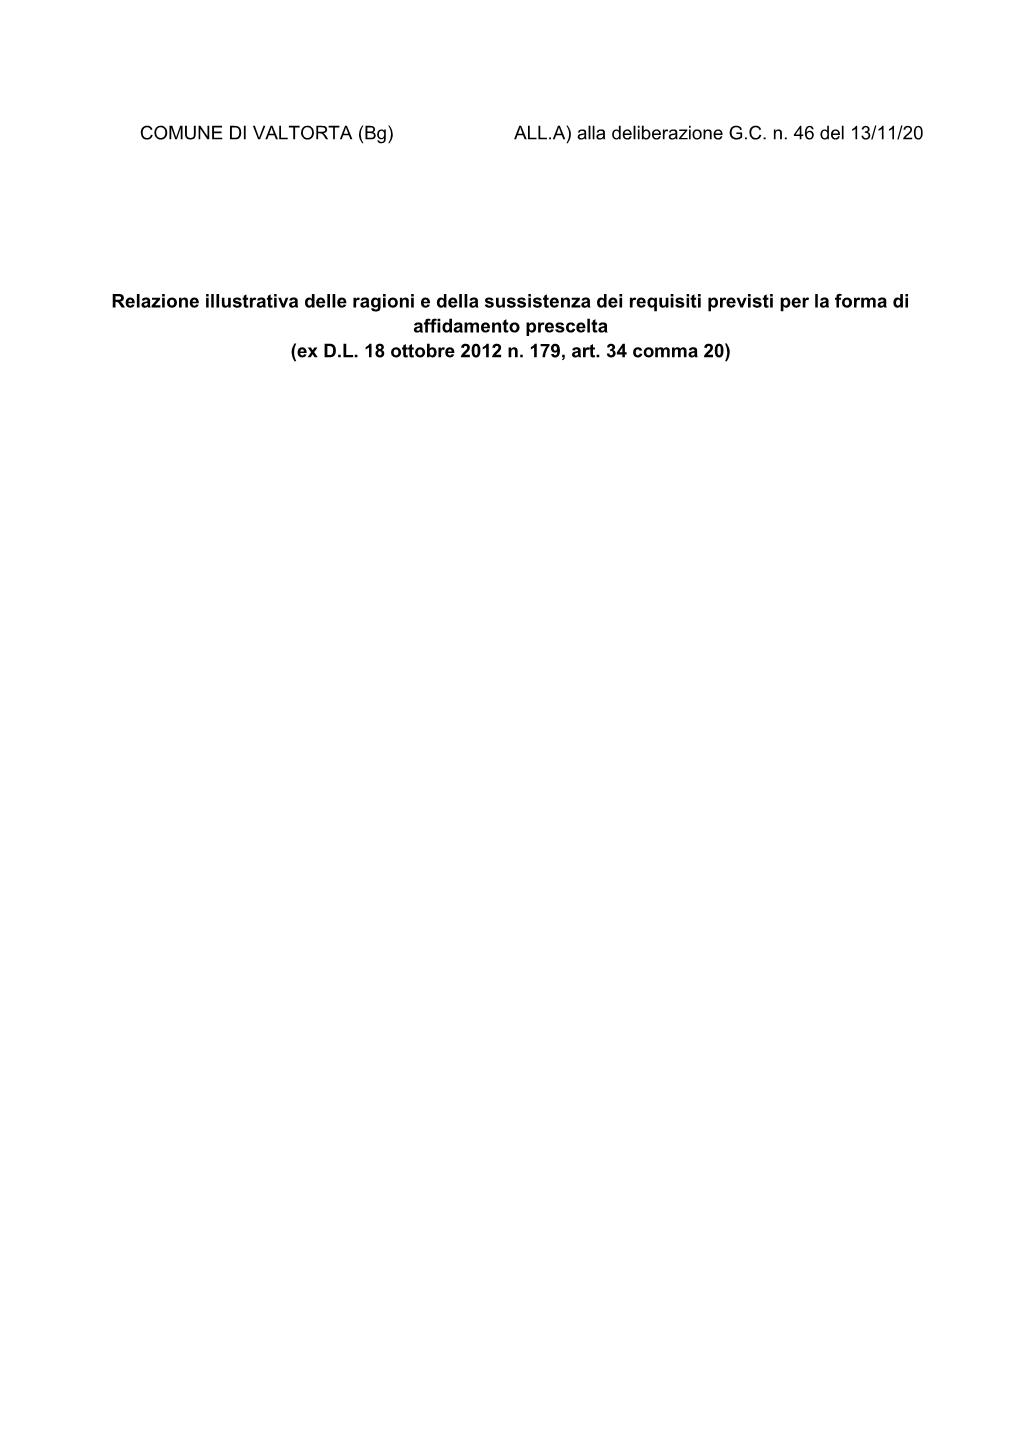 Relazione Illustrativa Delle Ragioni E Della Sussistenza Dei Requisiti Previsti Per La Forma Di Affidamento Prescelta (Ex D.L